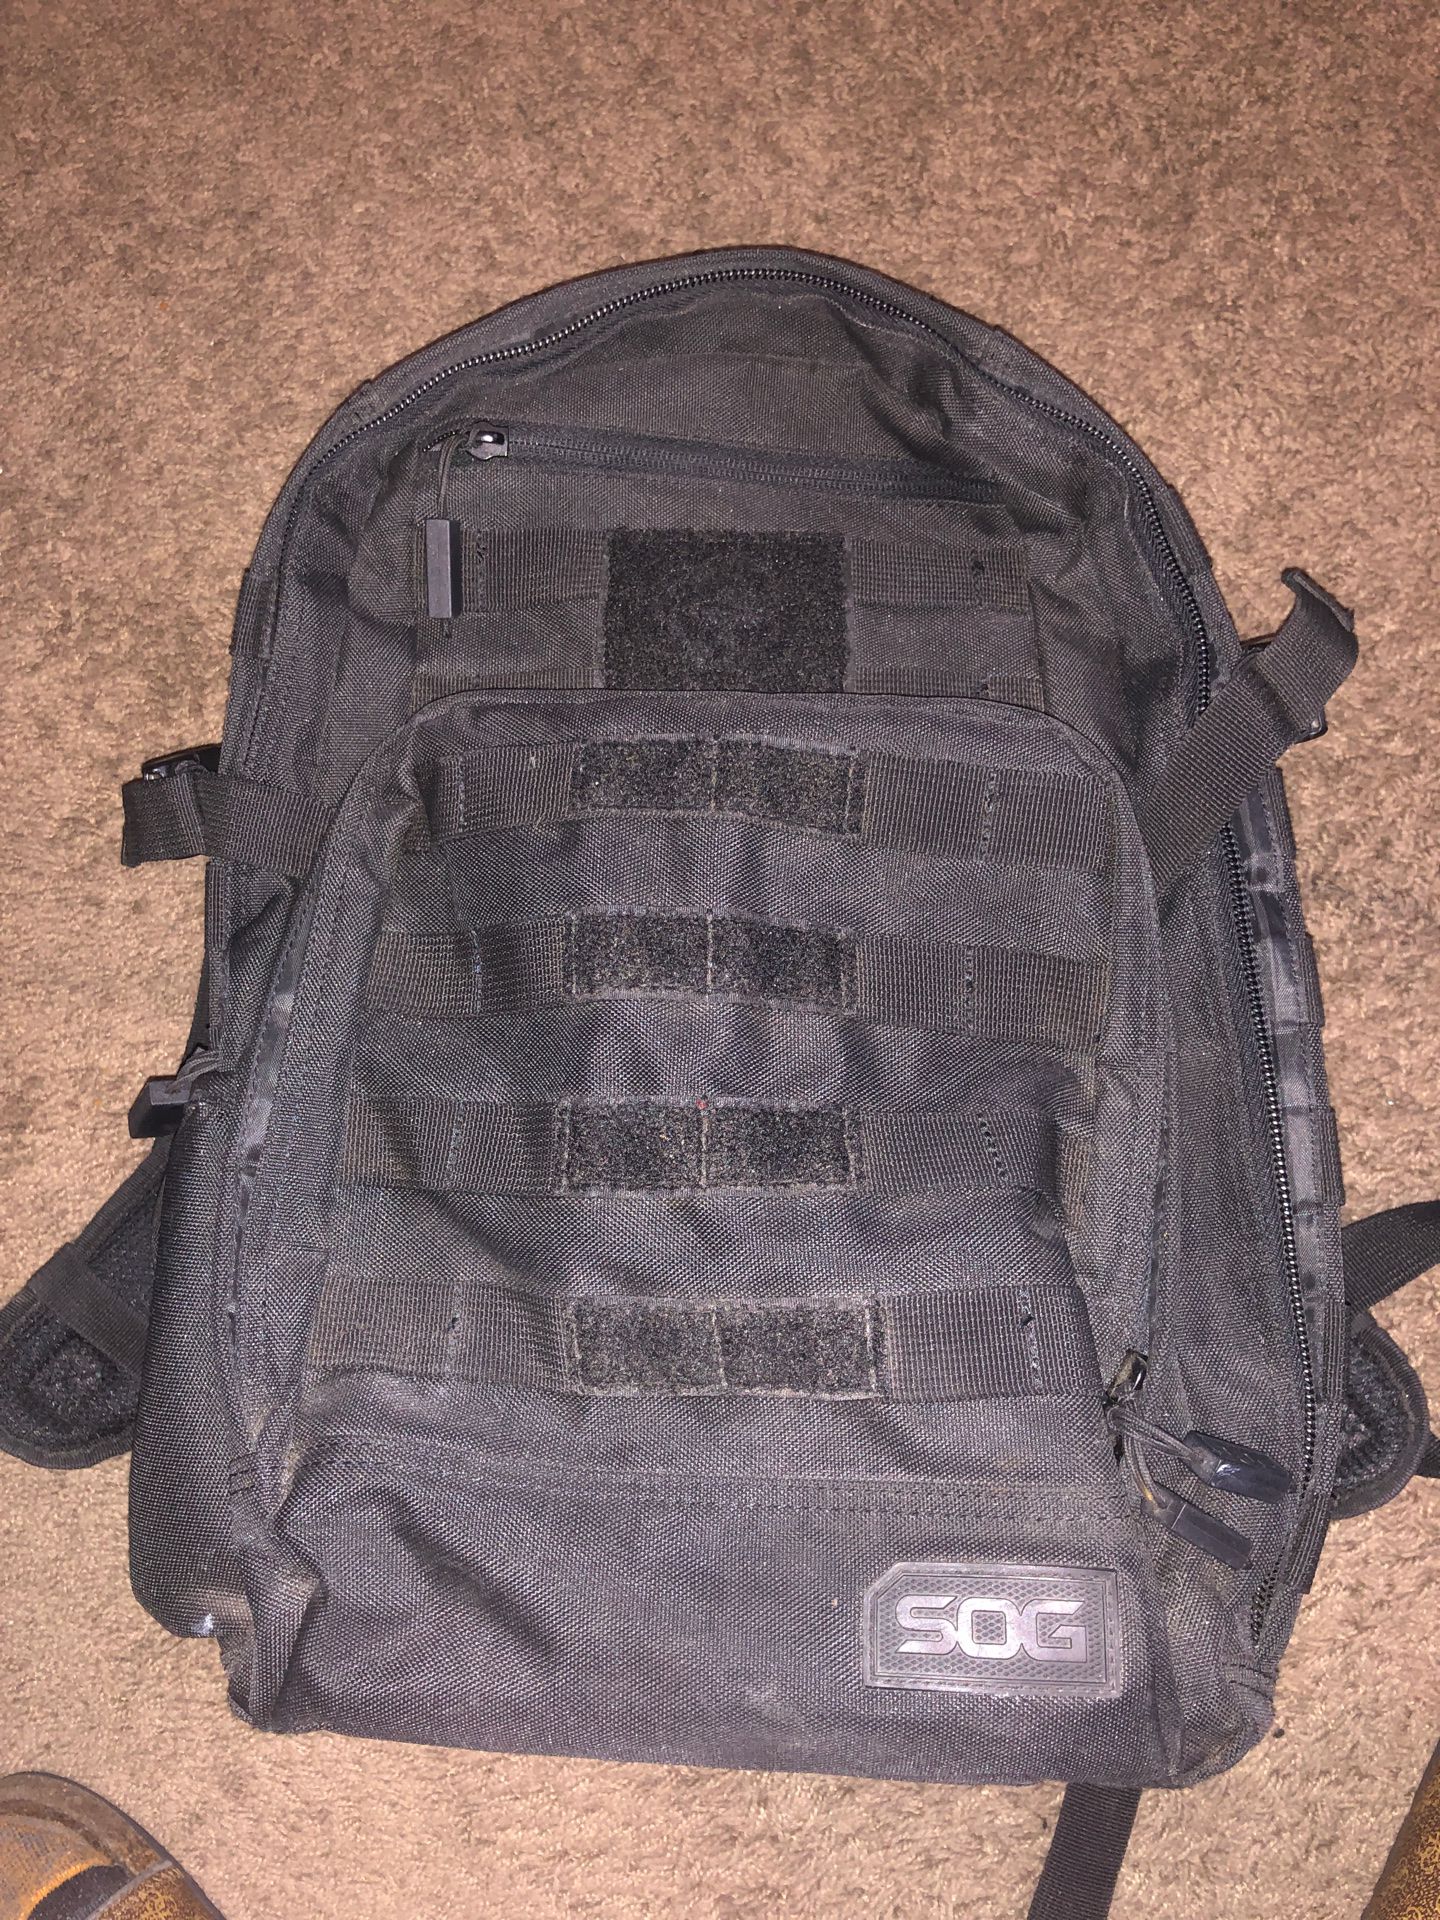 SOG backpack